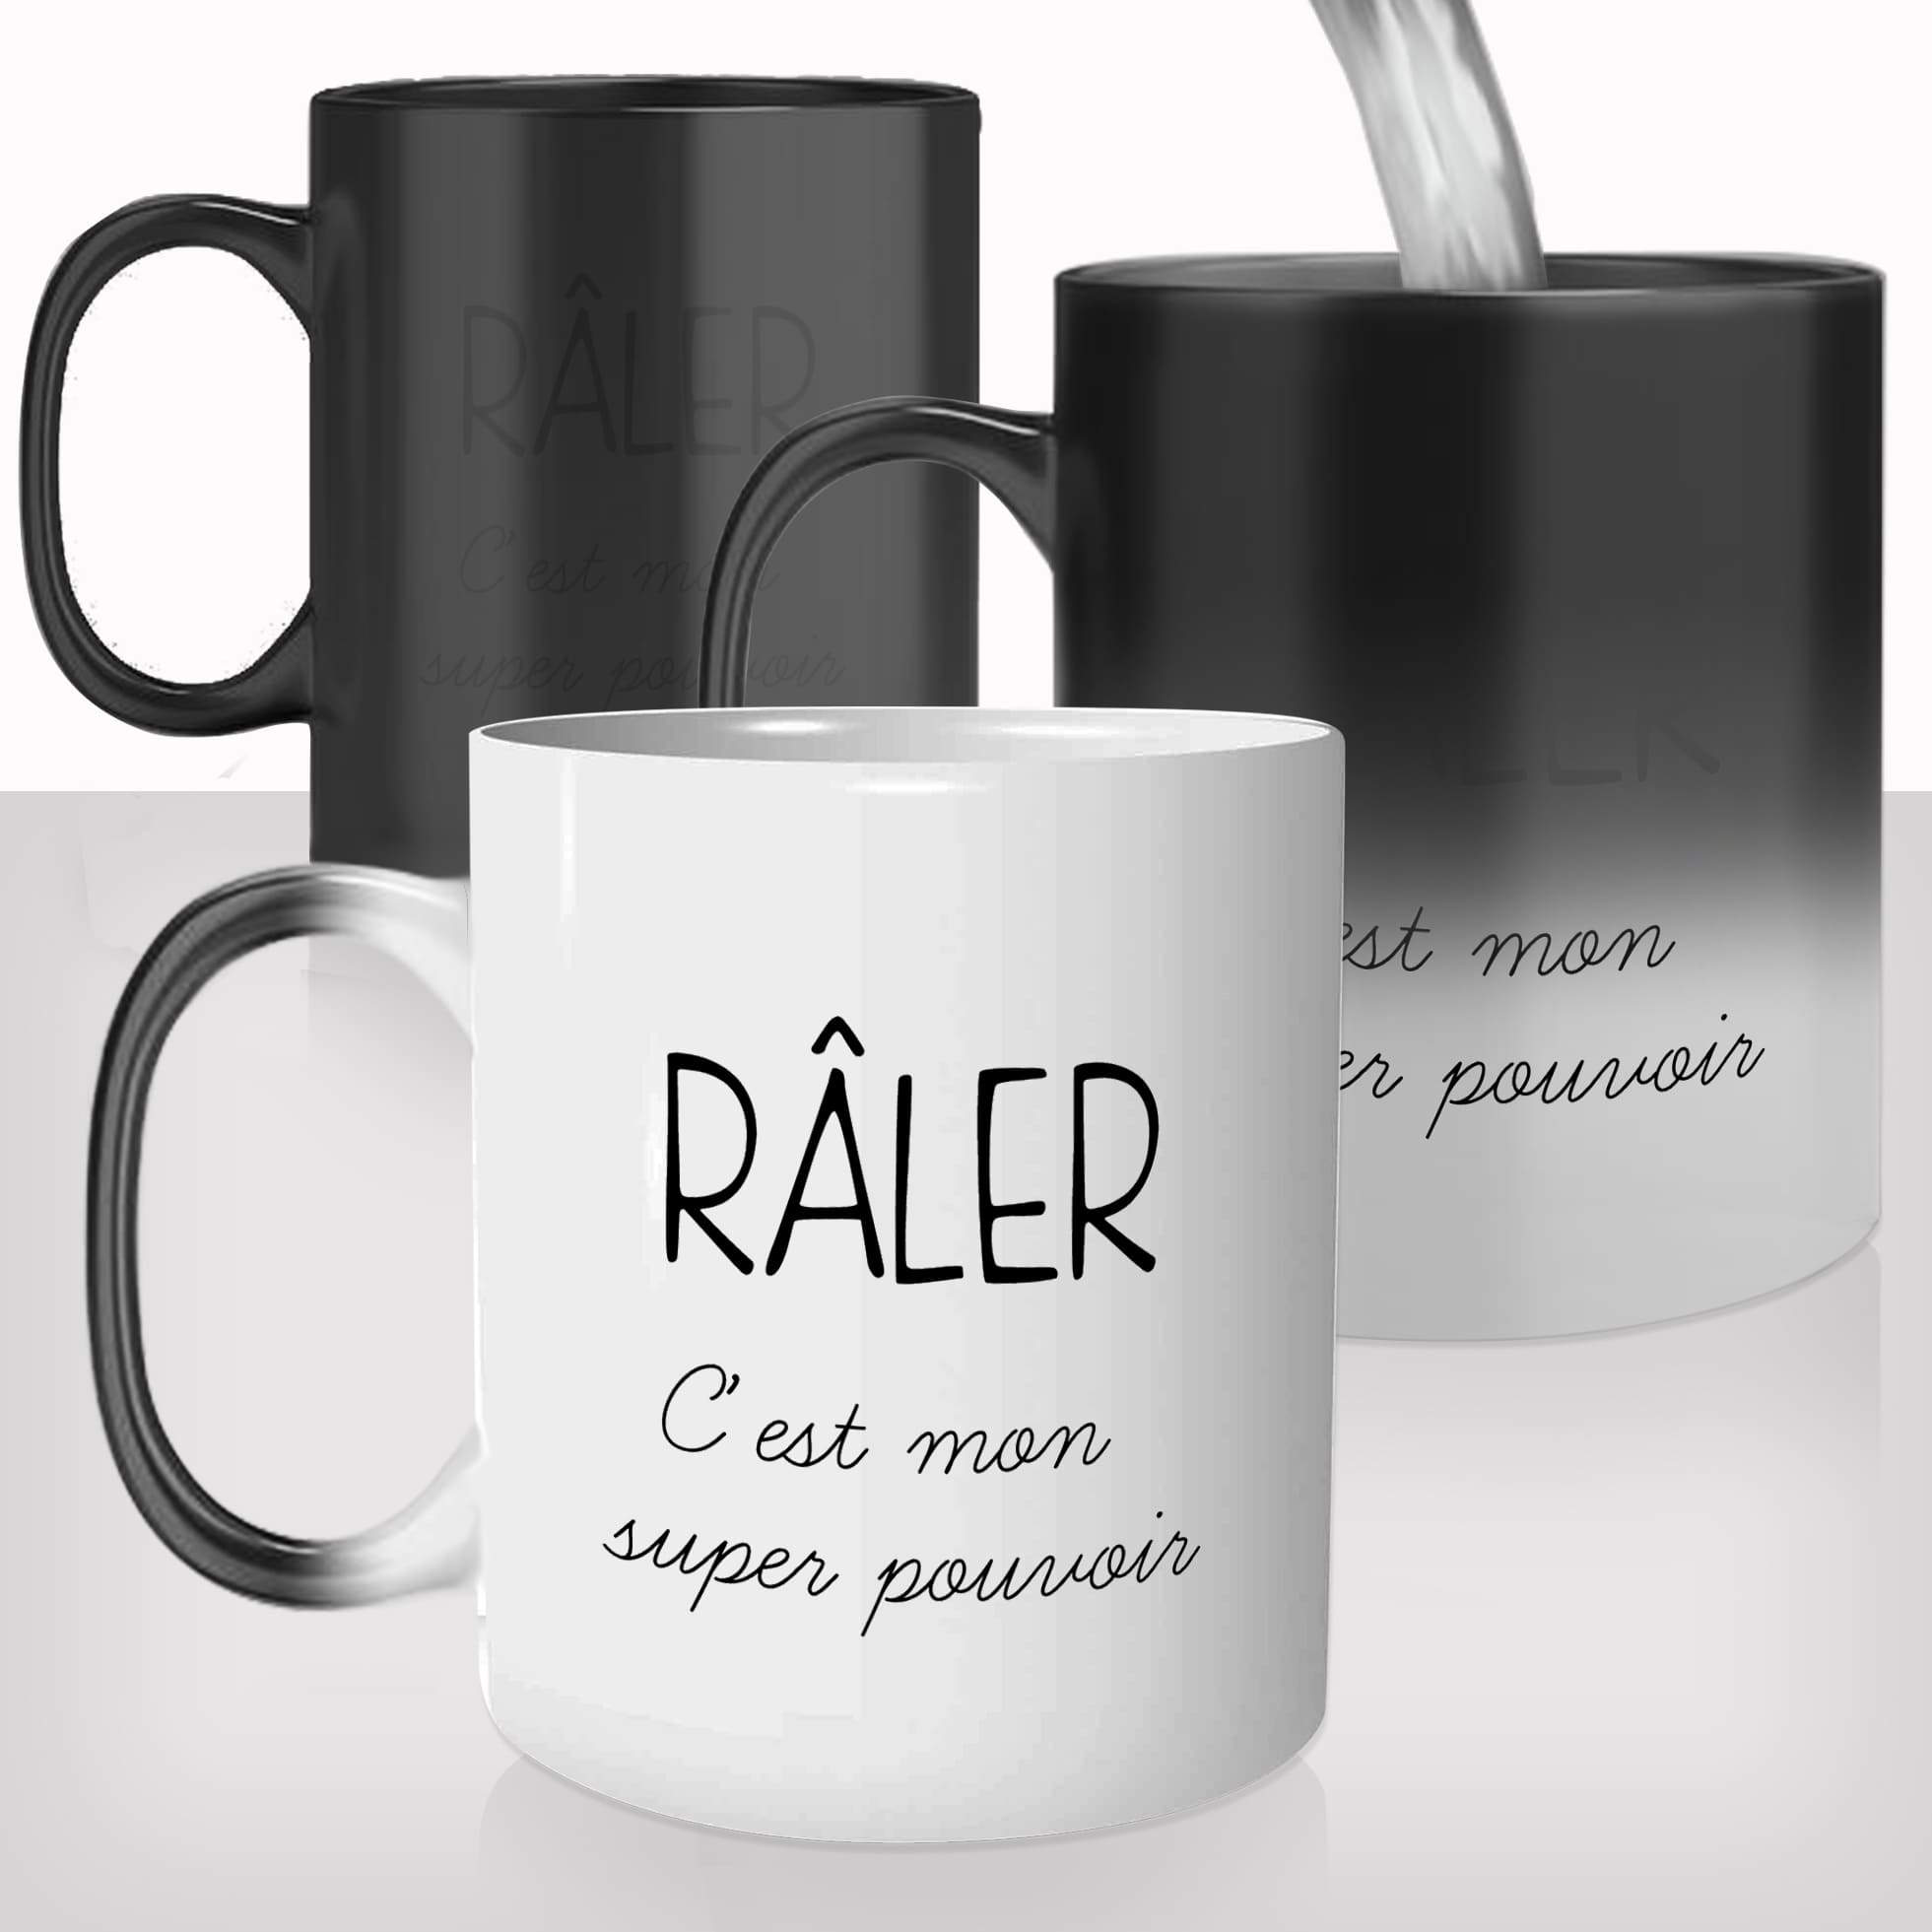 mug-magique-personnalisé-tasse-thermo-reactif-thermique-raler-raleur-raleuse-super-pouvoir-cool-humour-fun-personnalisable-cadeau